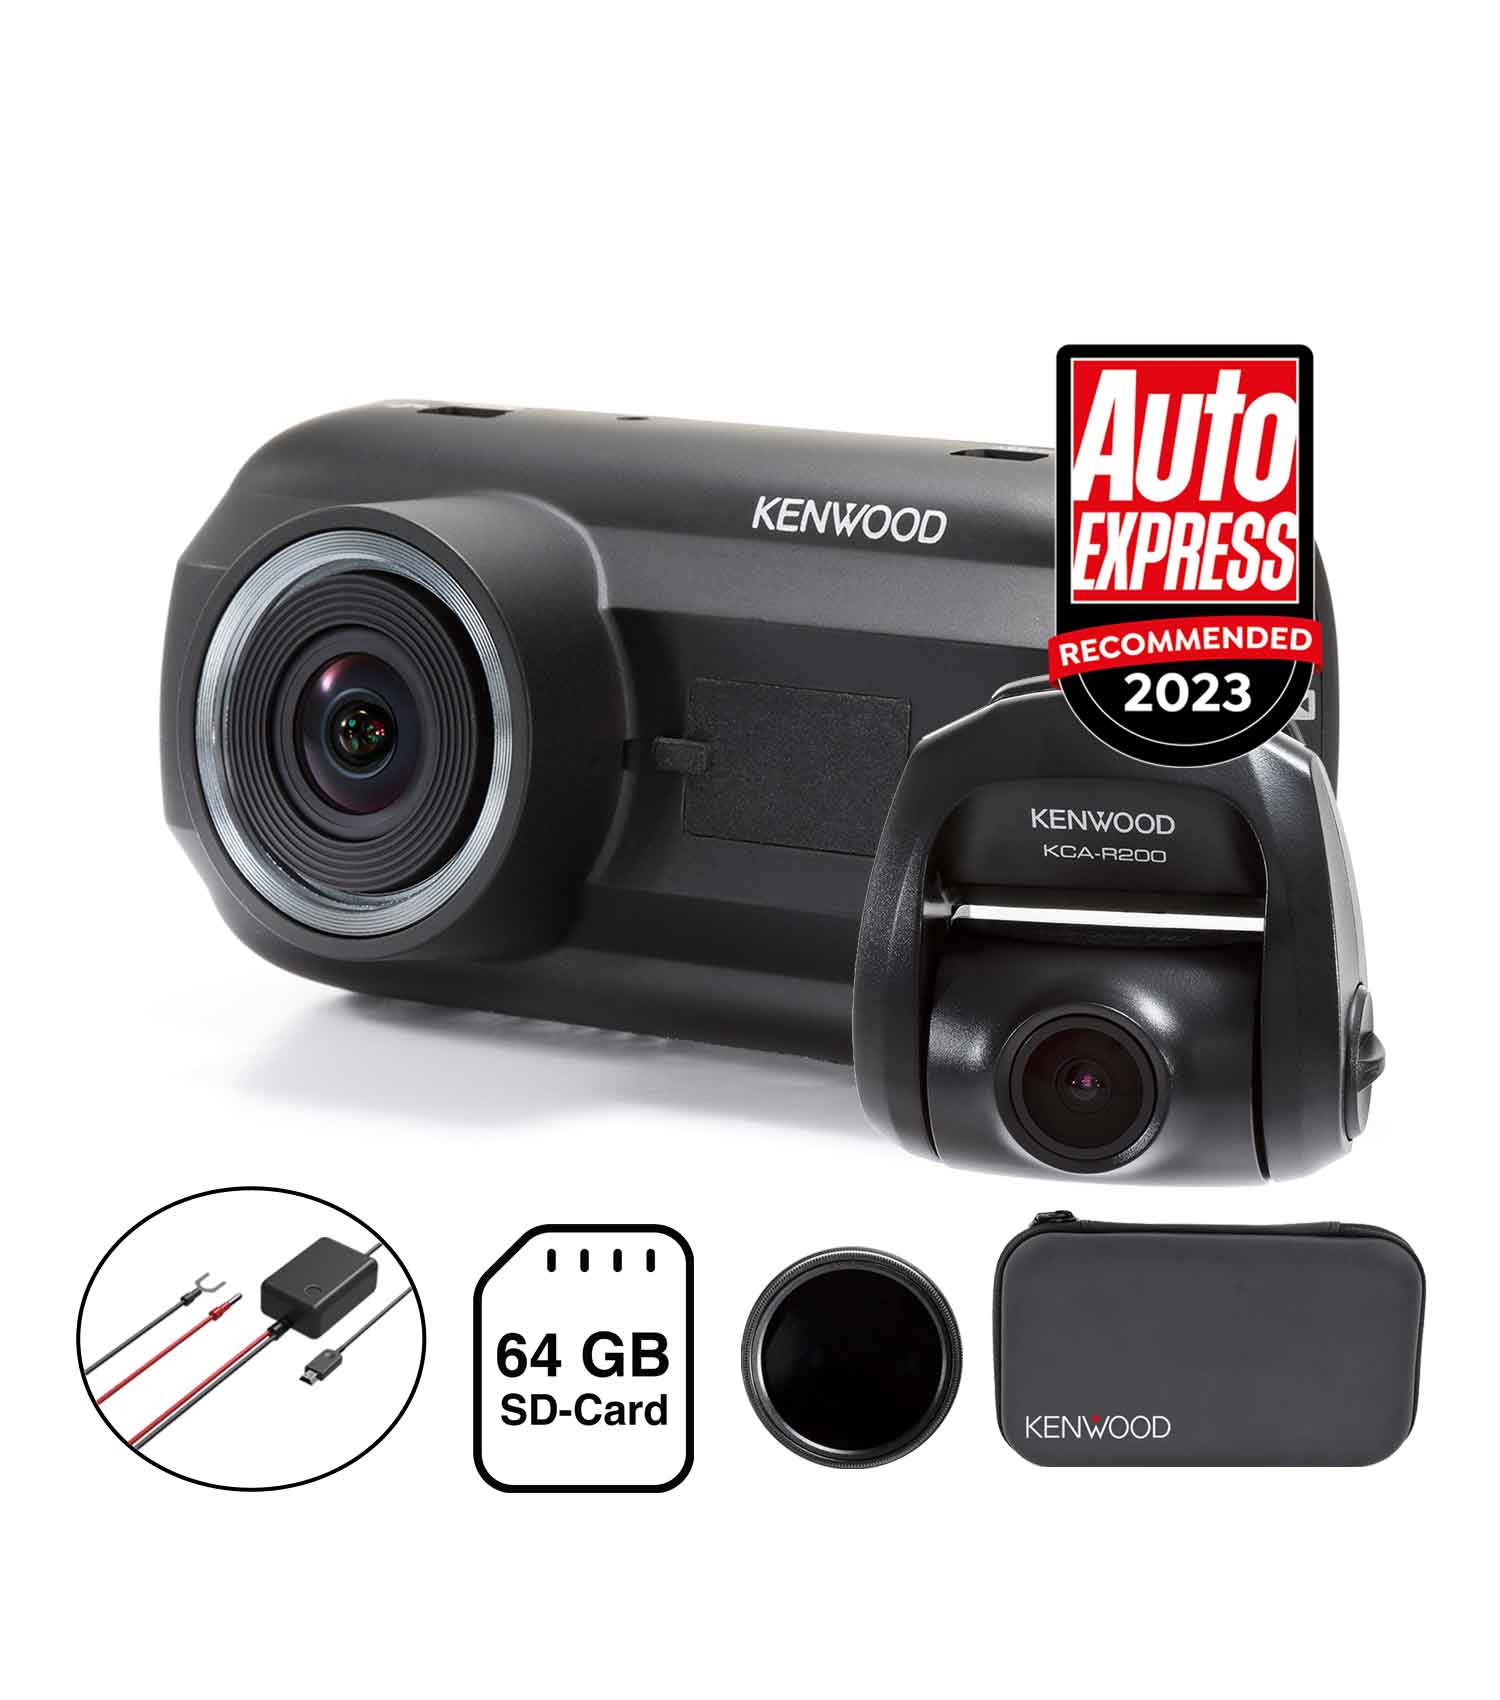 KENWOOD 601 dash camera bundle, kcar200 rear camera, hardwired kit, 64 sdcard, polarised filter, carry case